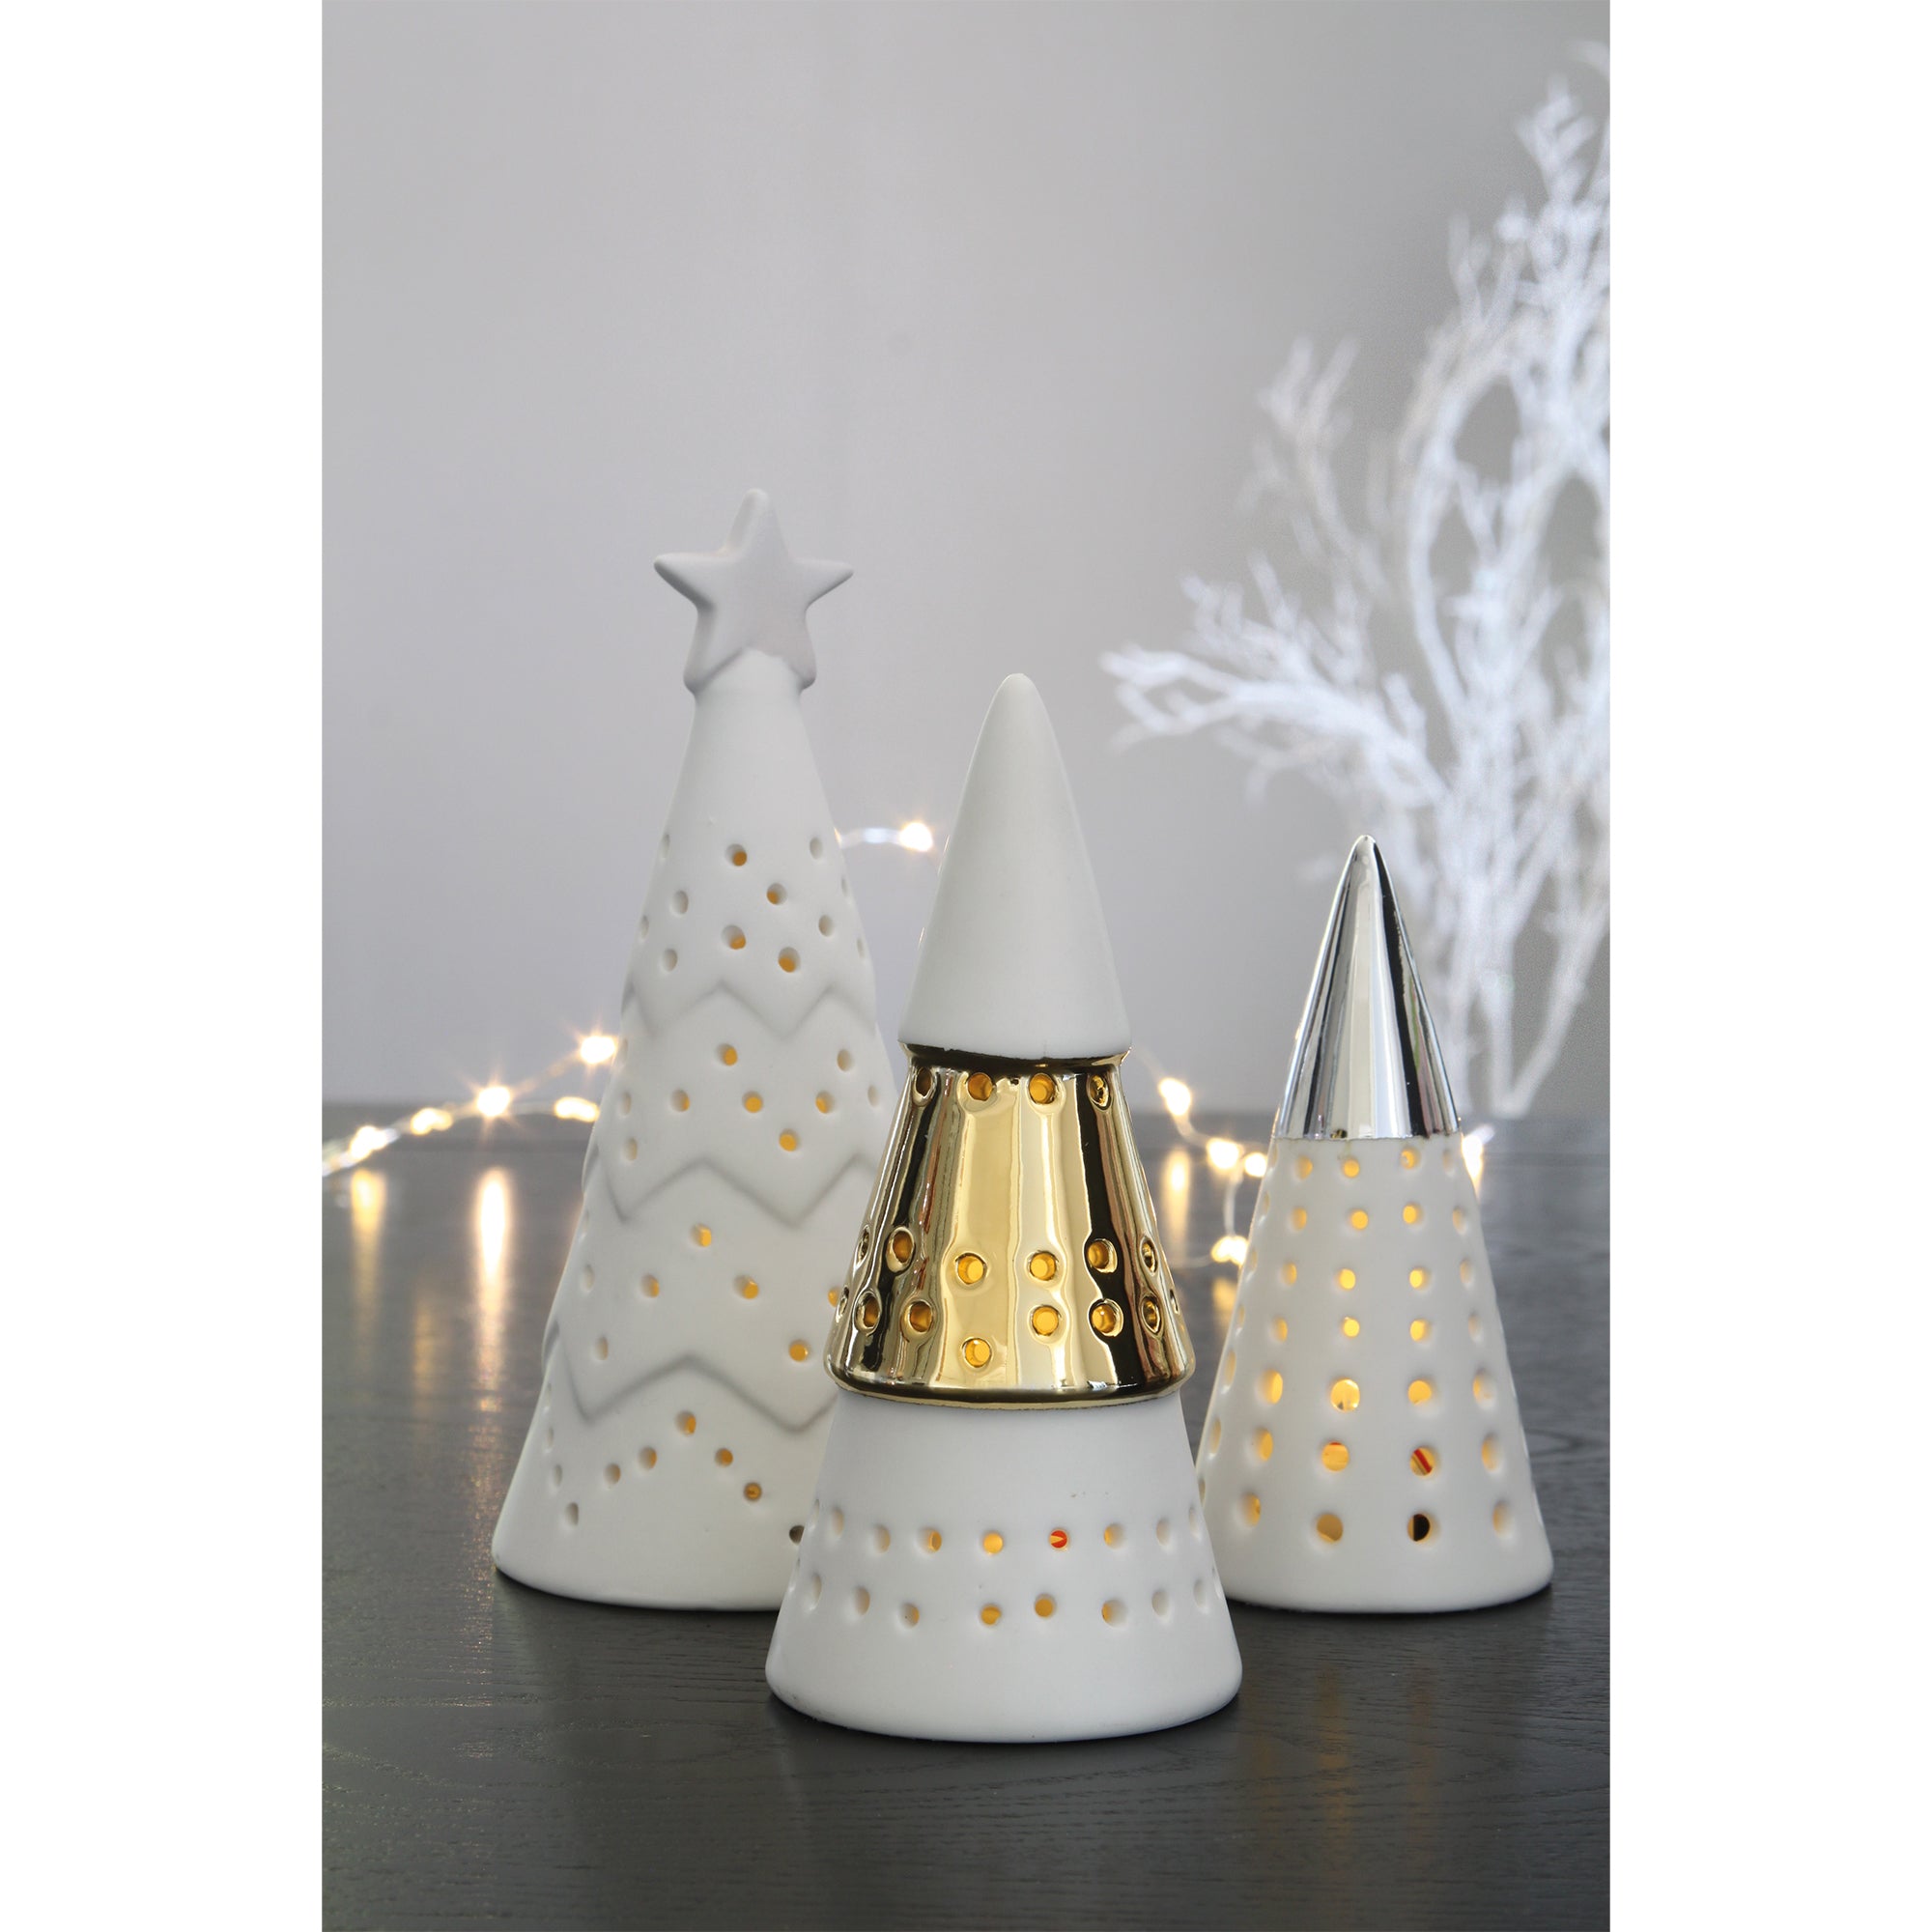 Ceramic Christmas Tree Group LED Decoration